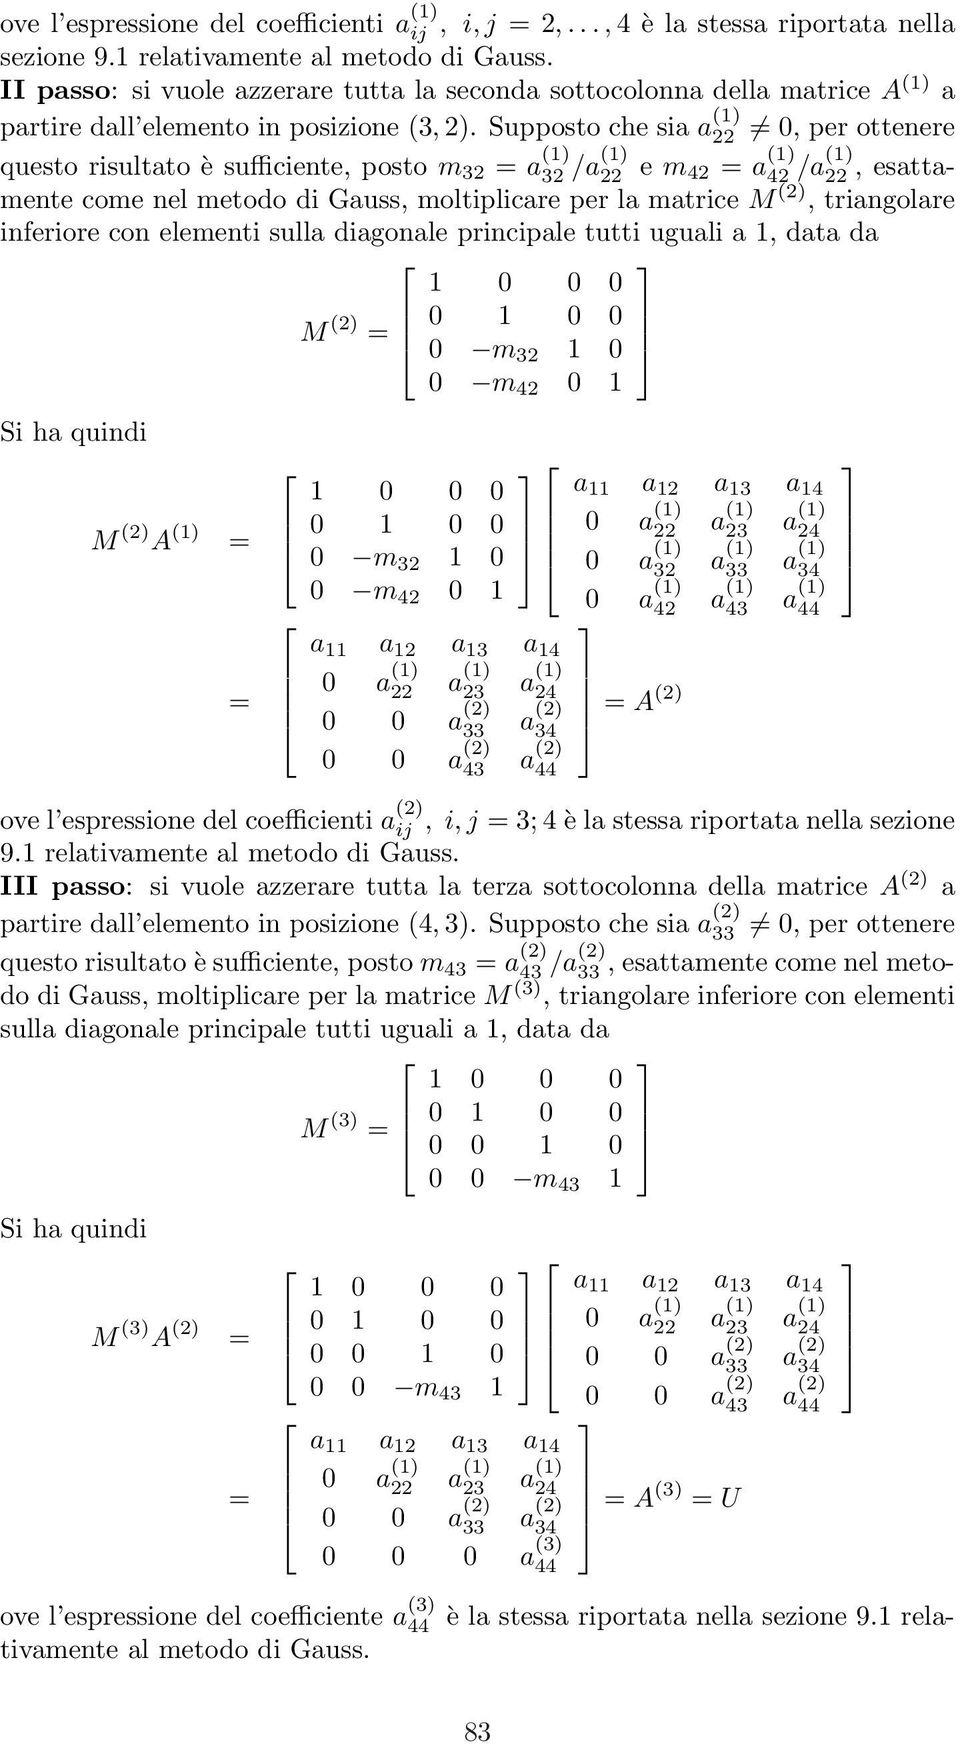 Supposto che sia a (1) 22 0, per ottenere questo risultato è sufficiente, posto m 32 a (1) 32 /a(1) 22 e m 42 a (1) 42 /a(1) 22, esattamente come nel metodo di Gauss, moltiplicare per la matrice M